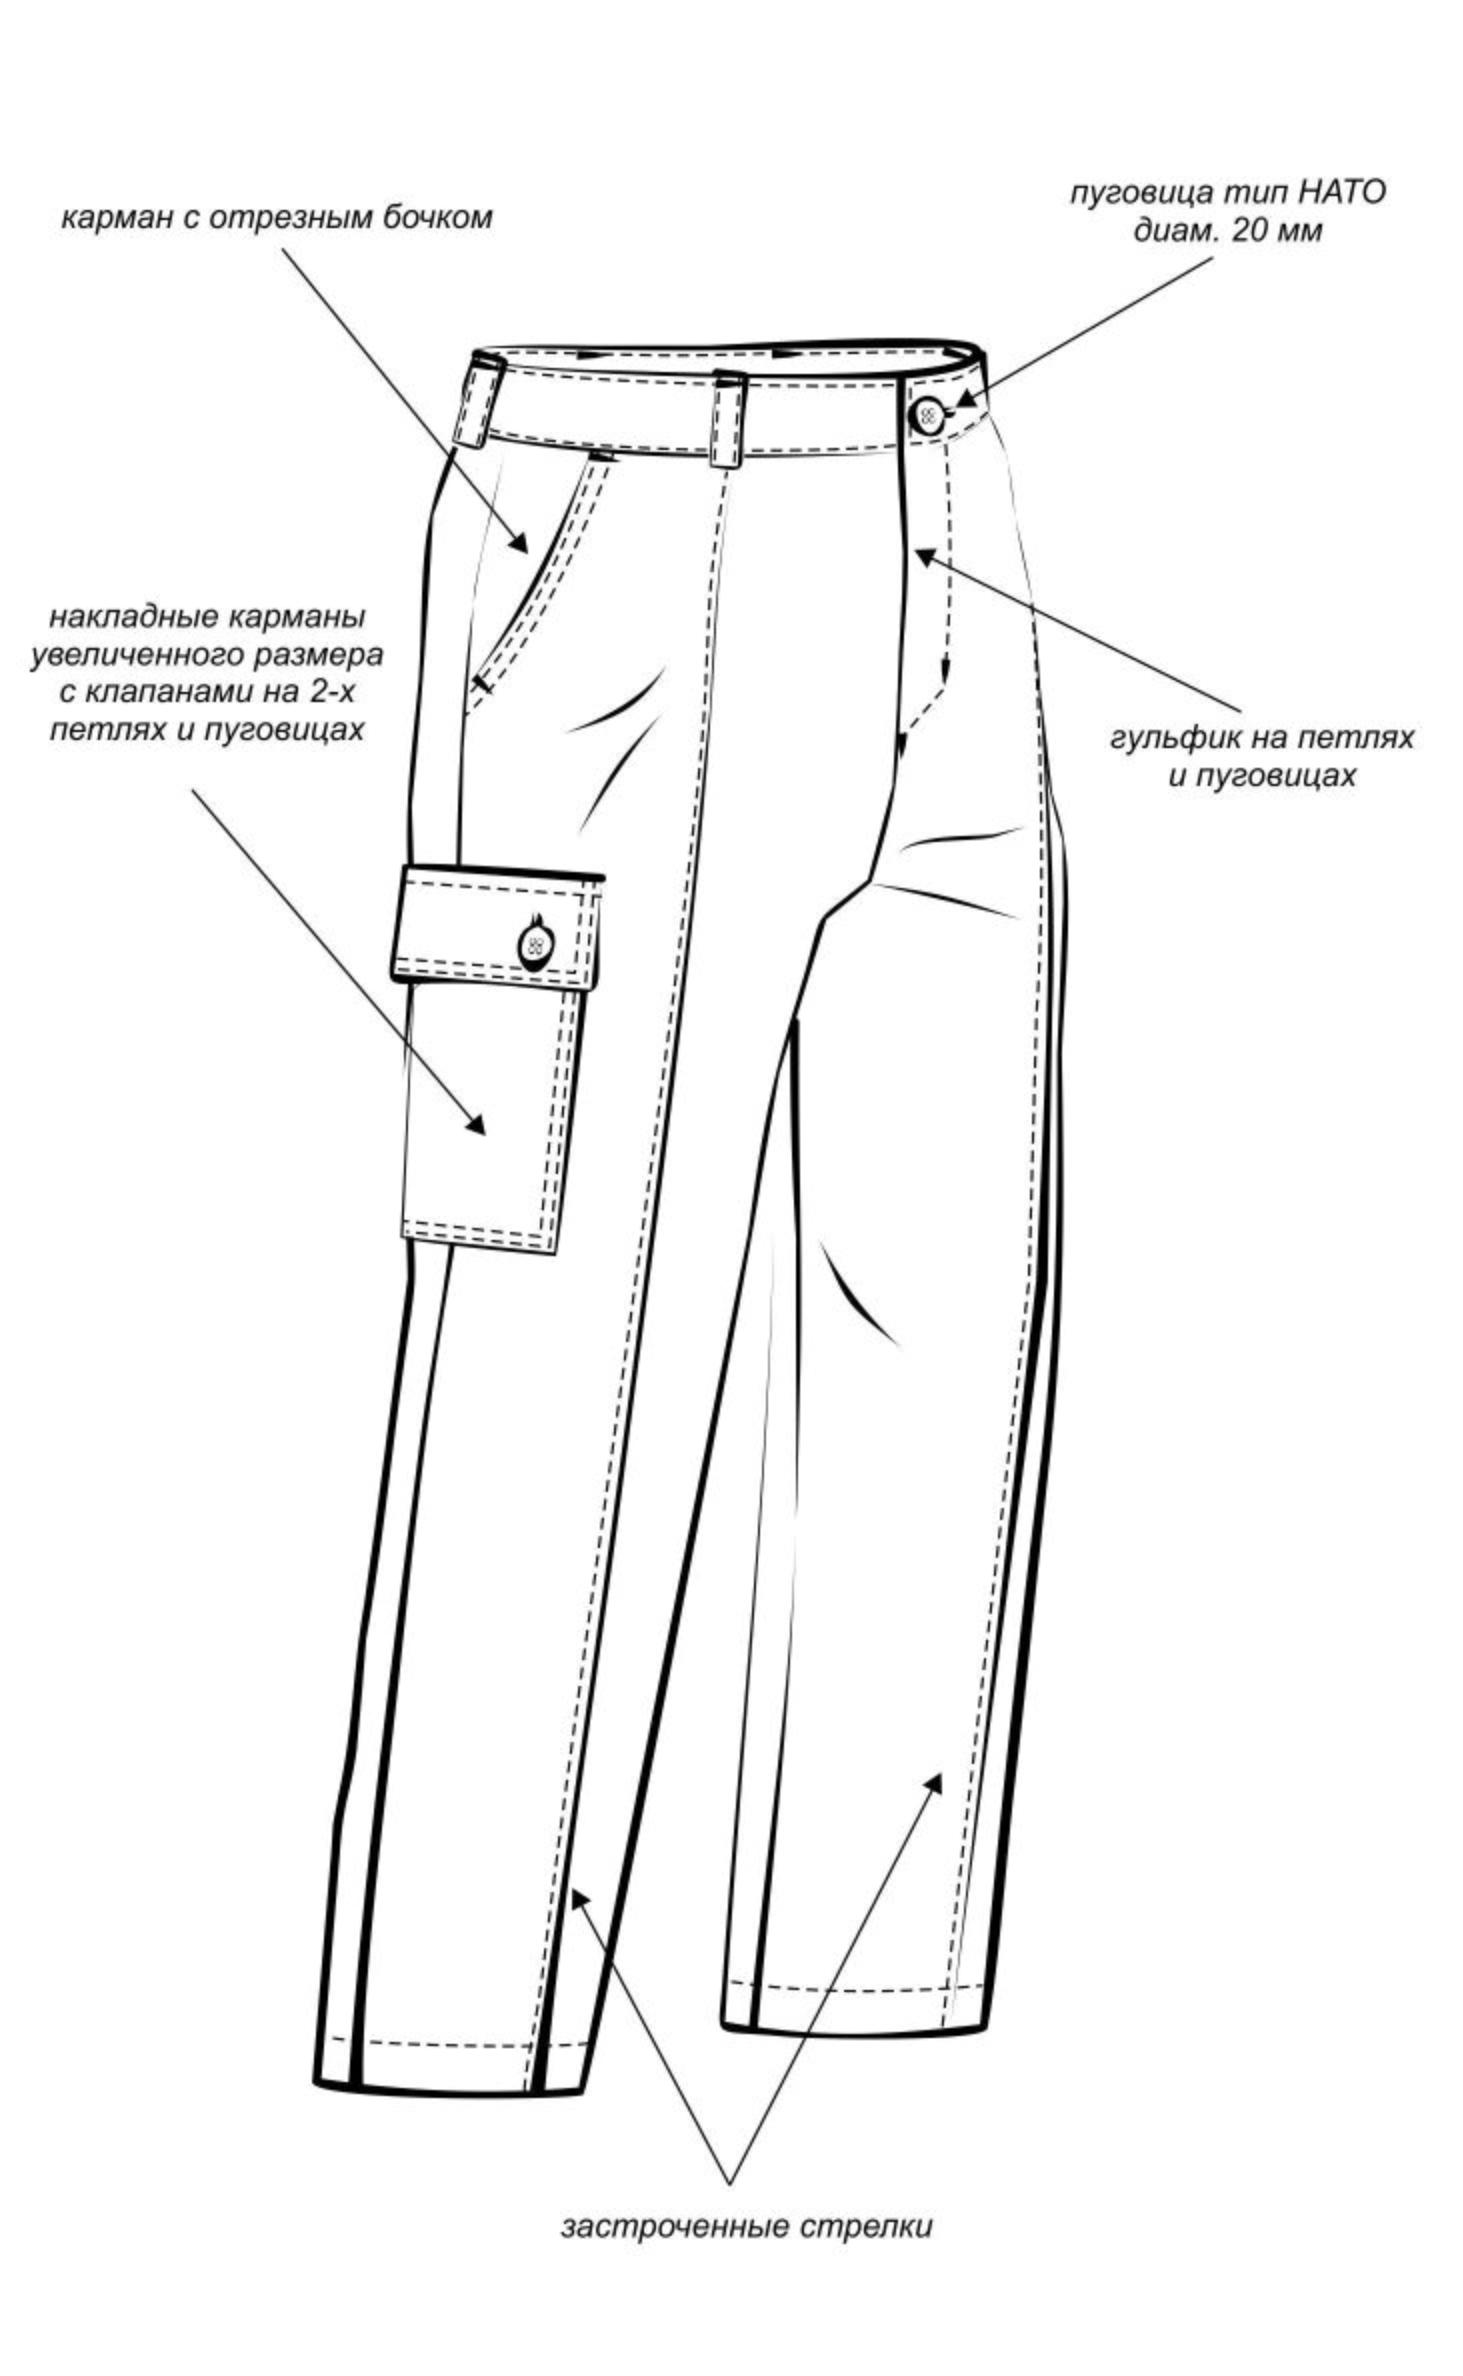 Разновидности брюк описание